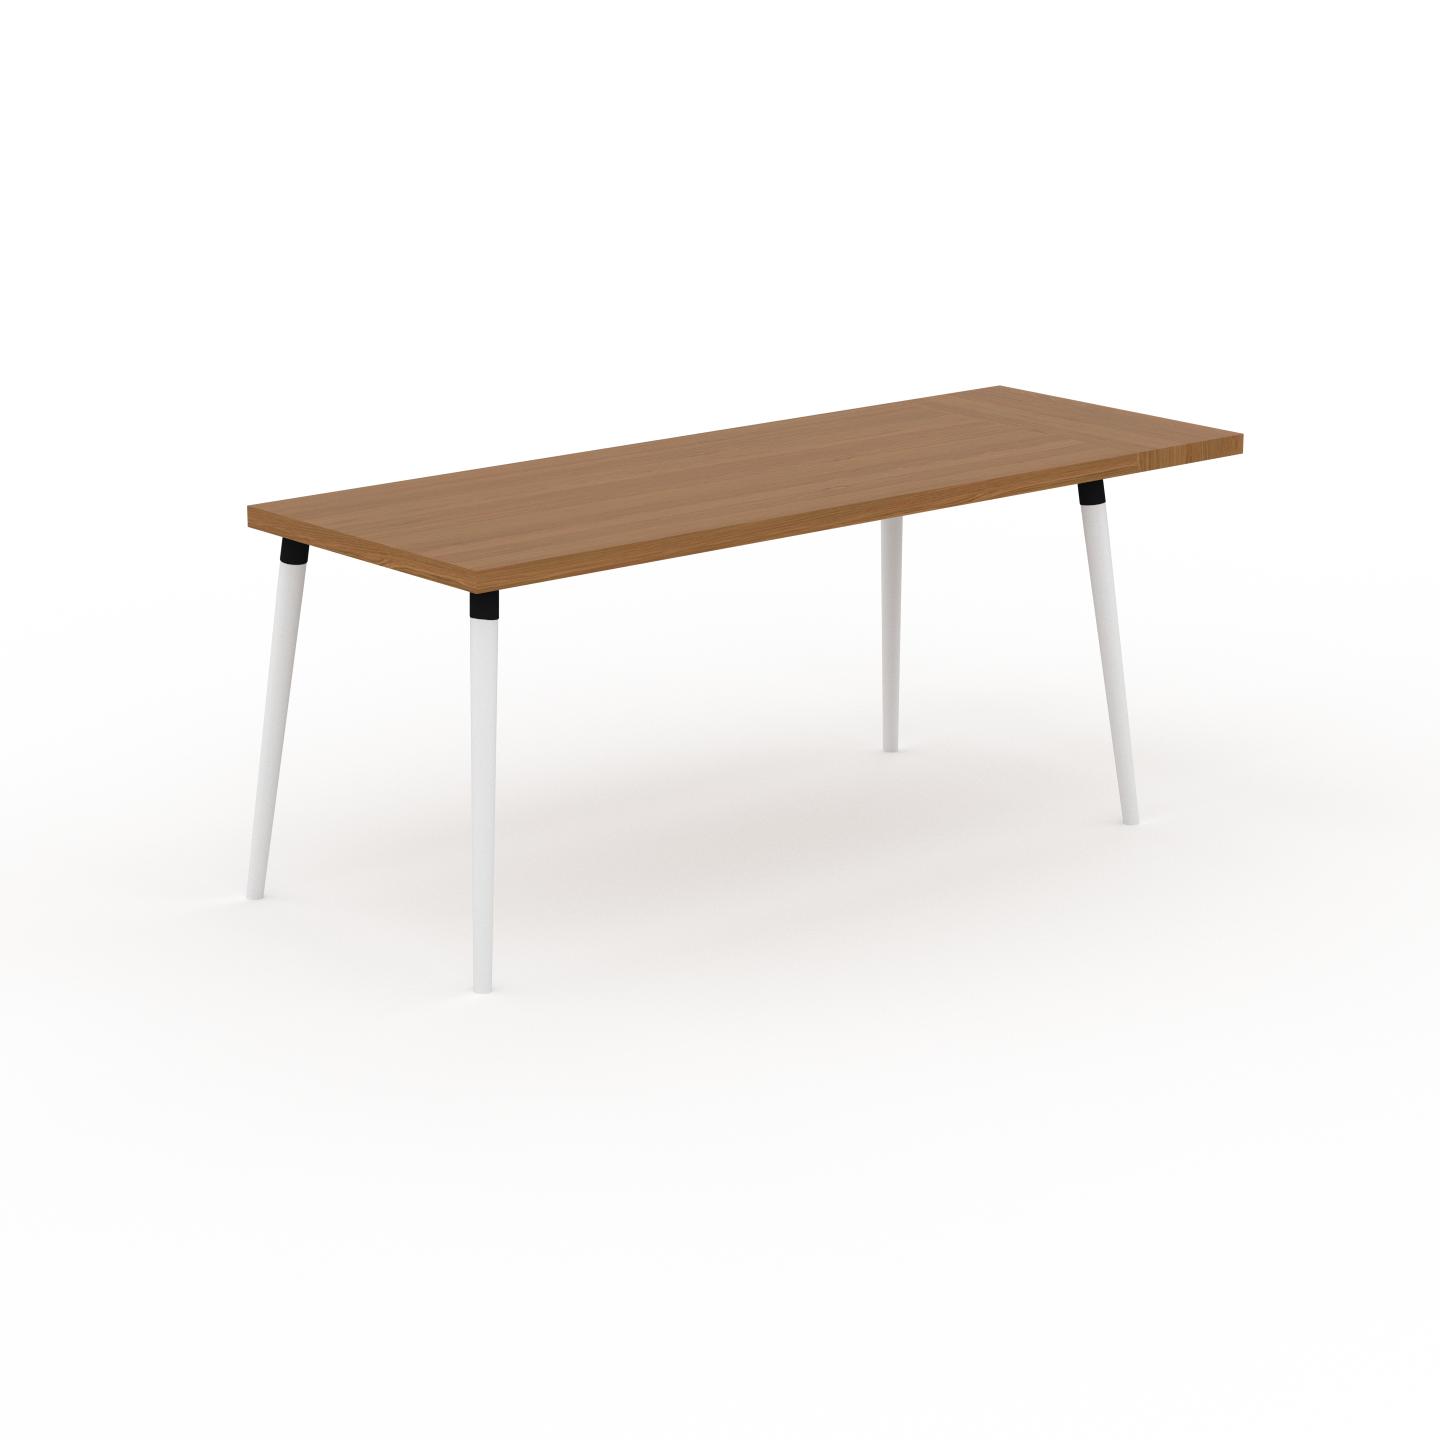 MYCS Schreibtisch Massivholz Eiche, Holz - Moderner Massivholz-Schreibtisch: Einzigartiges Design - 190 x 75 x 70 cm, konfigurierbar